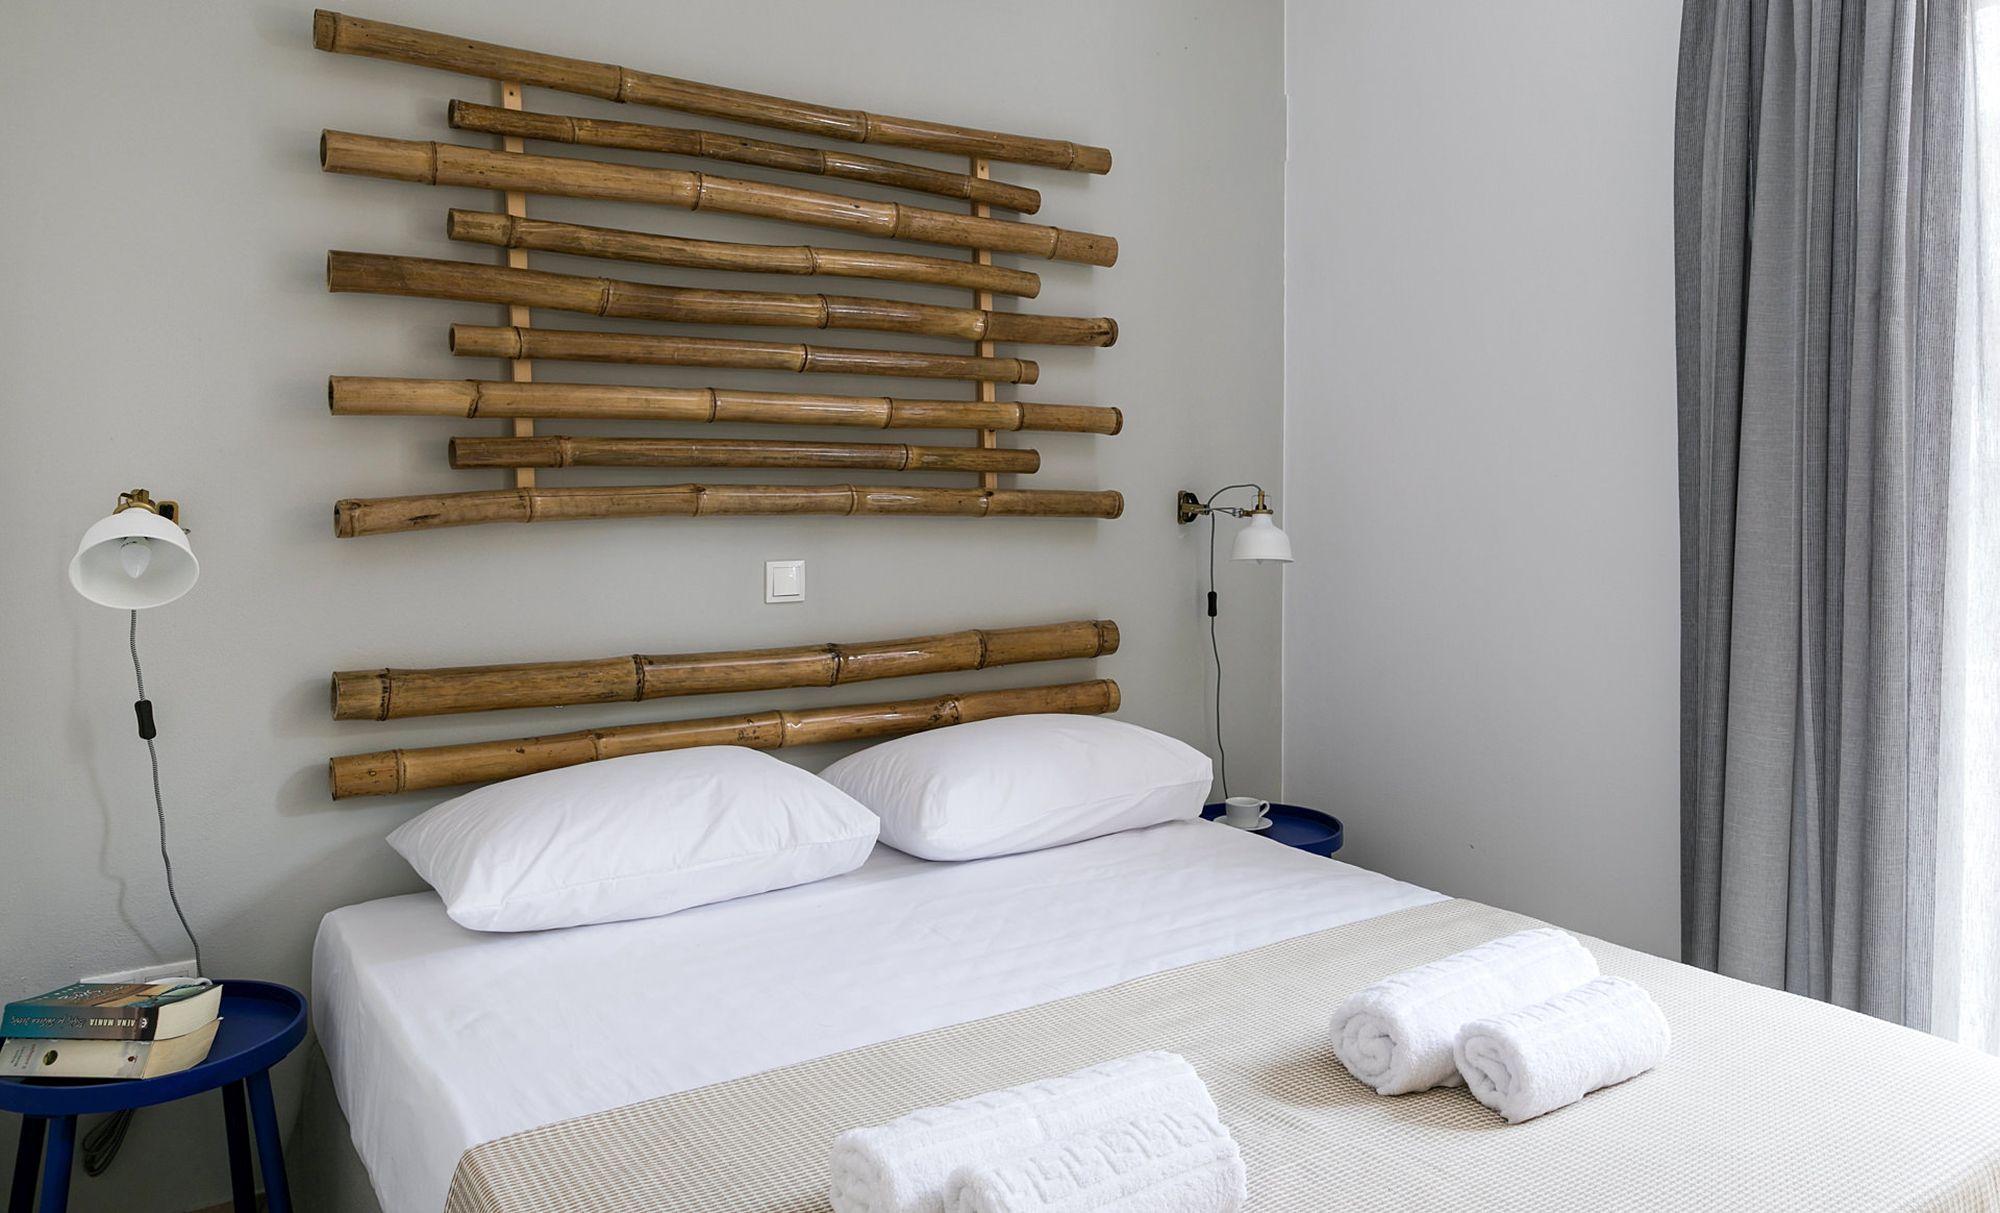 Υπνοδωμάτιο με διπλό κρεβάτι, μεταλλικά μπλε κομοδίνα, μοντέρνα επιτοίχια φωτιστικά σε λευκό-χρυσό χρώμα και  διακοσμητικοί ιστοί μπαμπού στον τοίχο πάνω από το κρεβάτι.